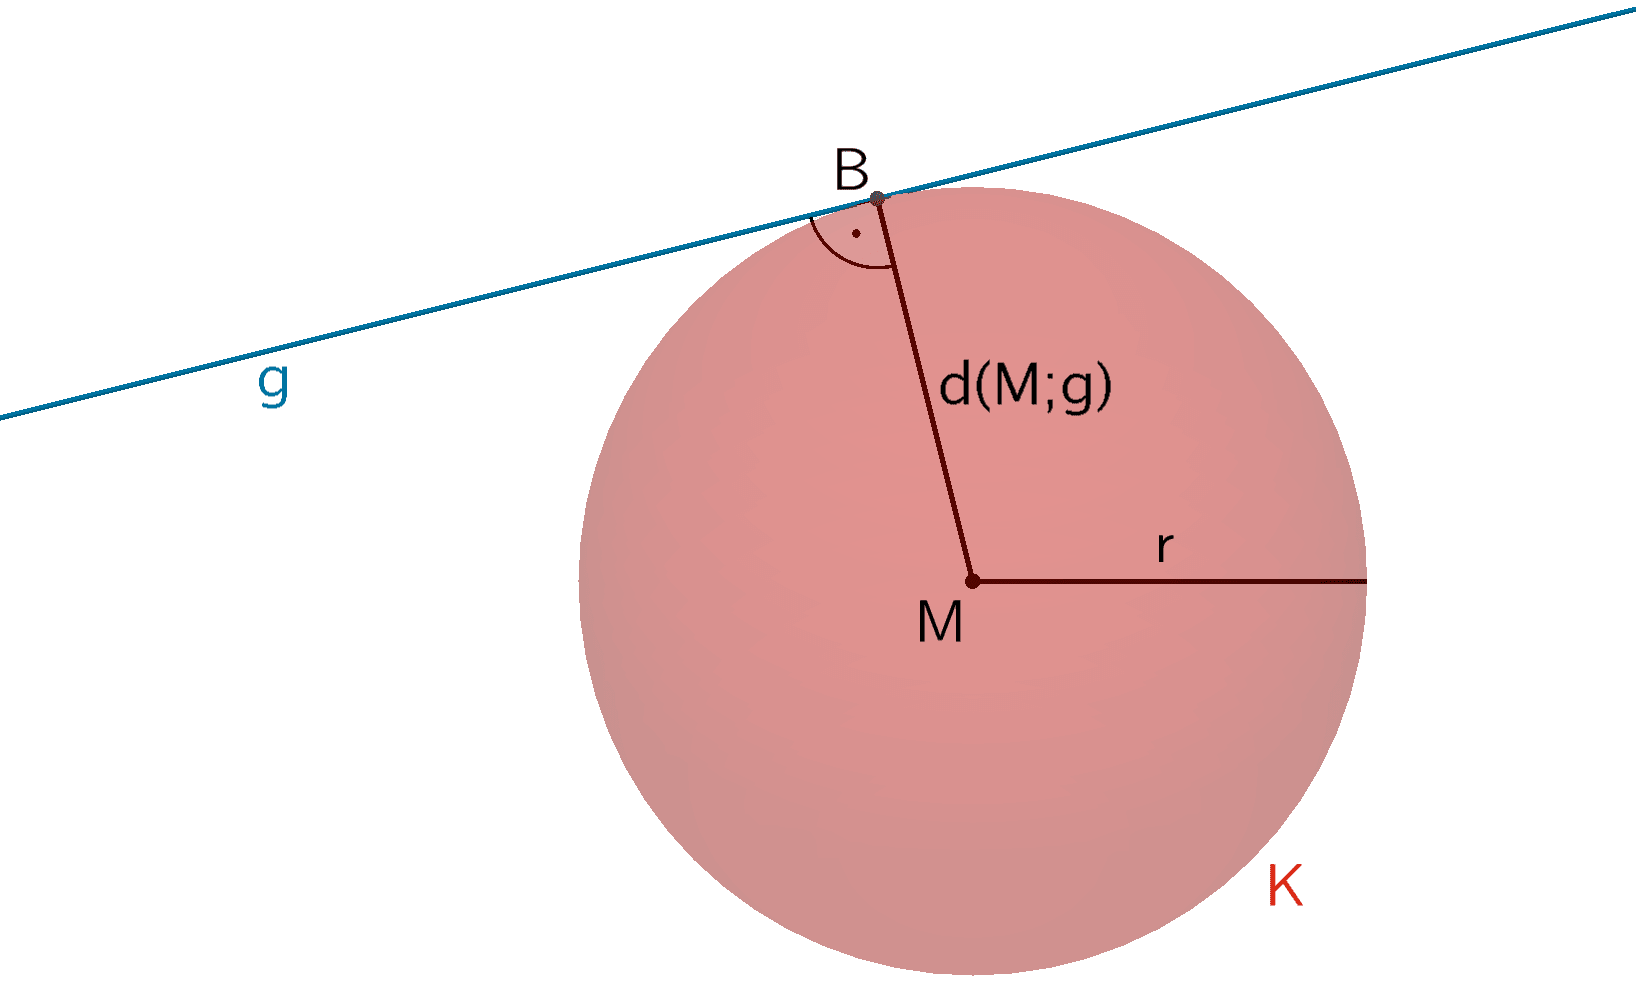 Die Gerade g und die Kugel K haben einen gemeinsamen Punkt (Berührpunkt).